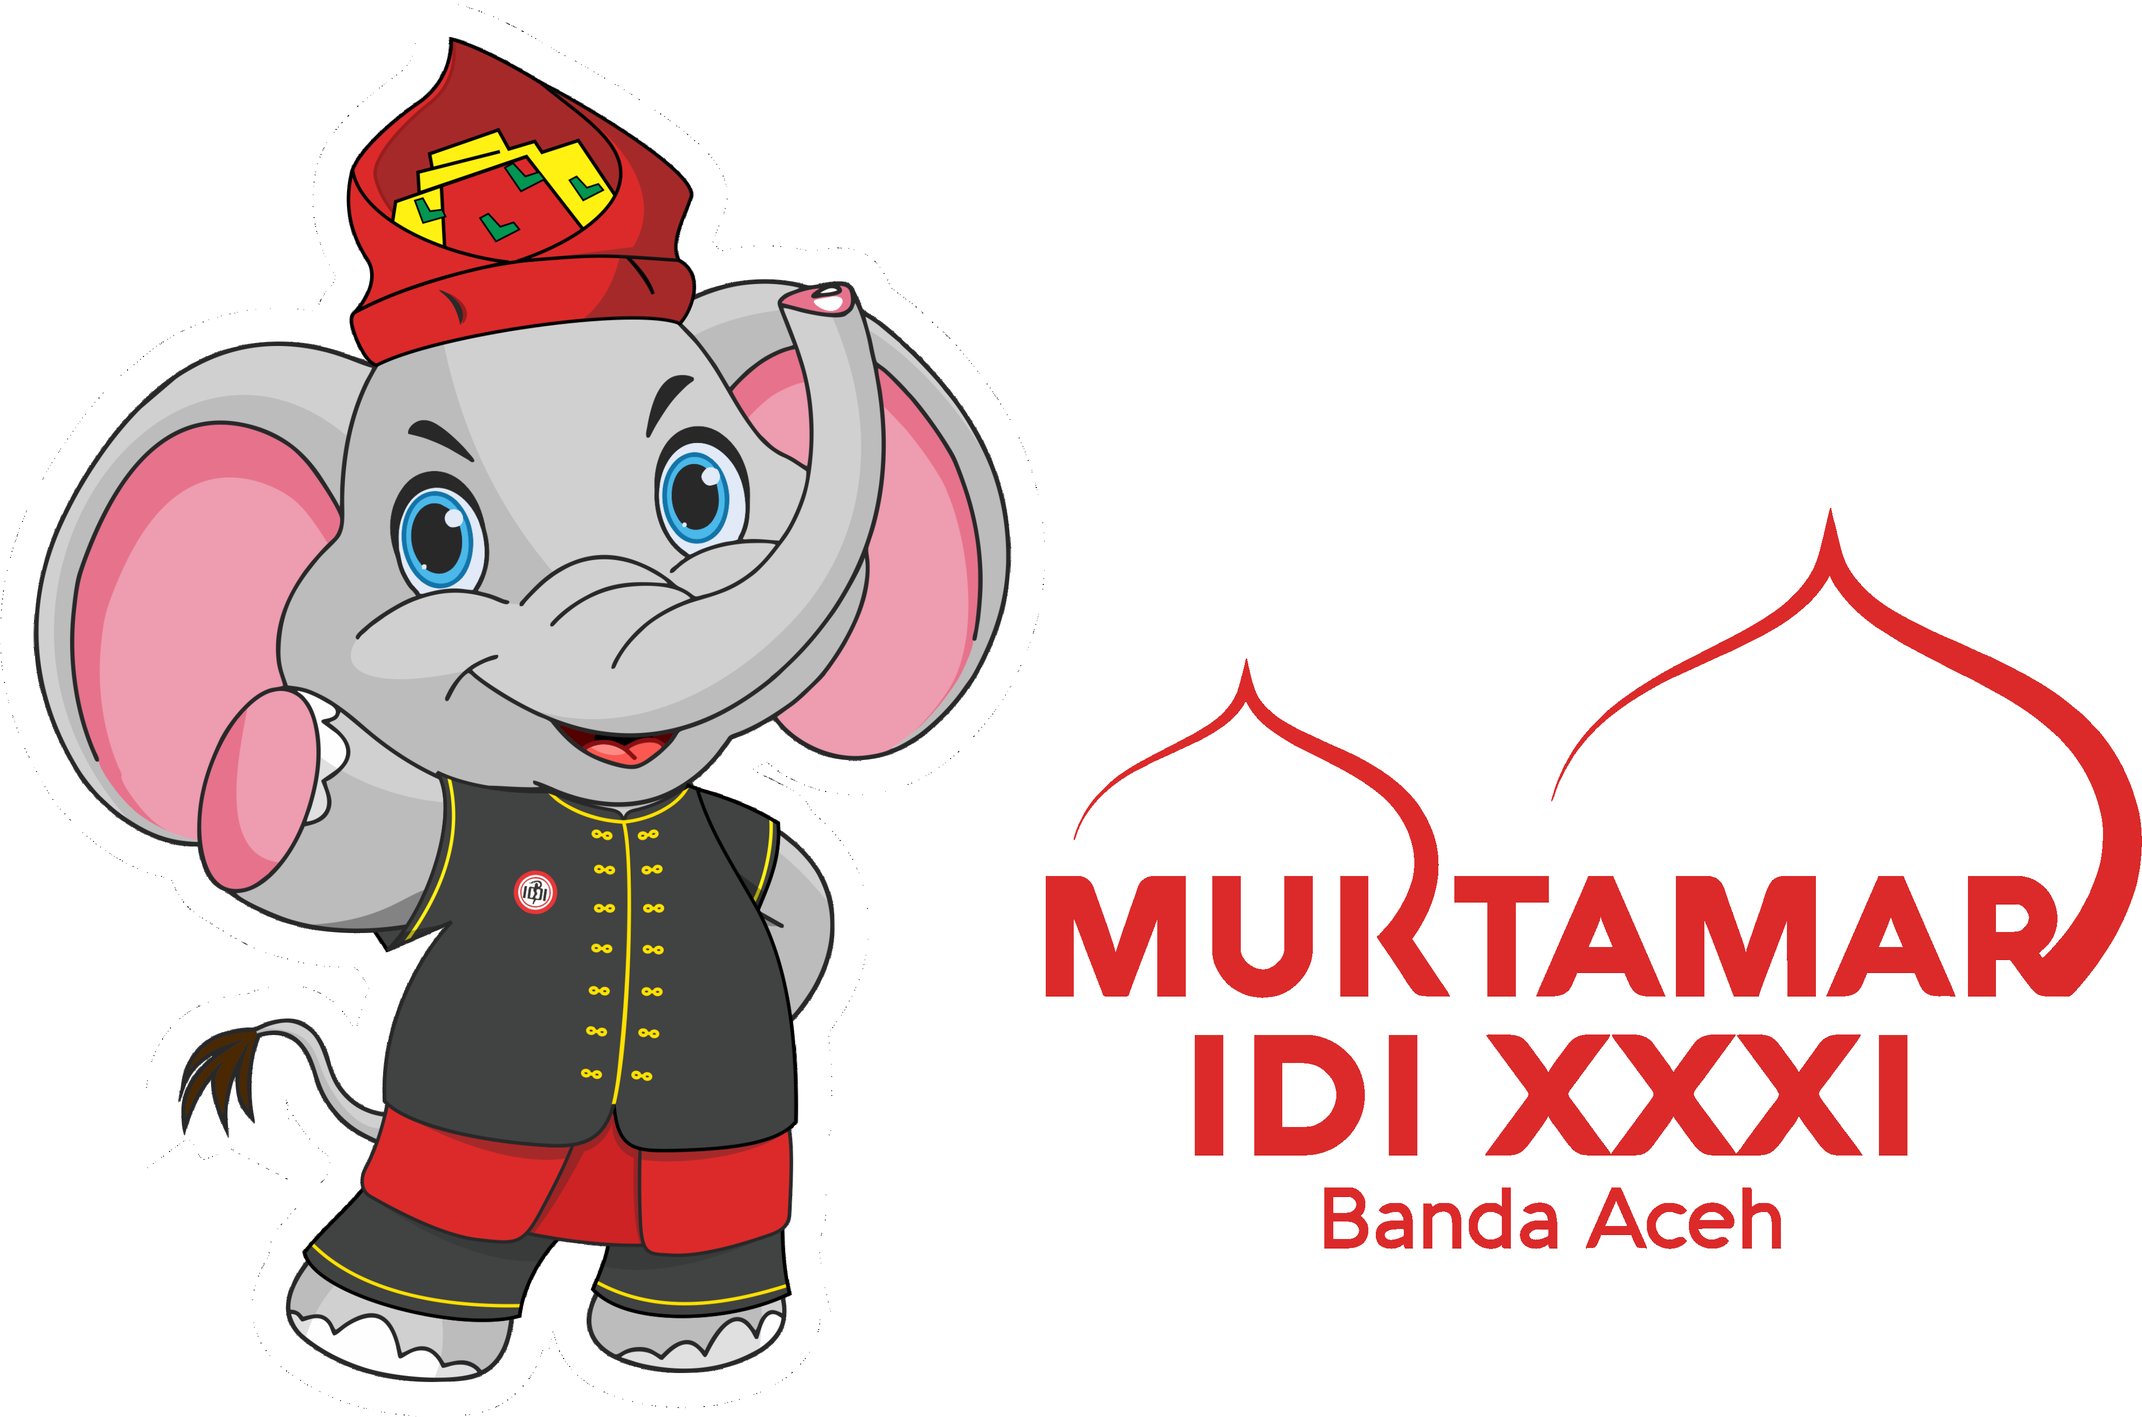 Muktamar IDI ke-31 akan berlangsung di Banda Aceh 22-25 Maret 2022